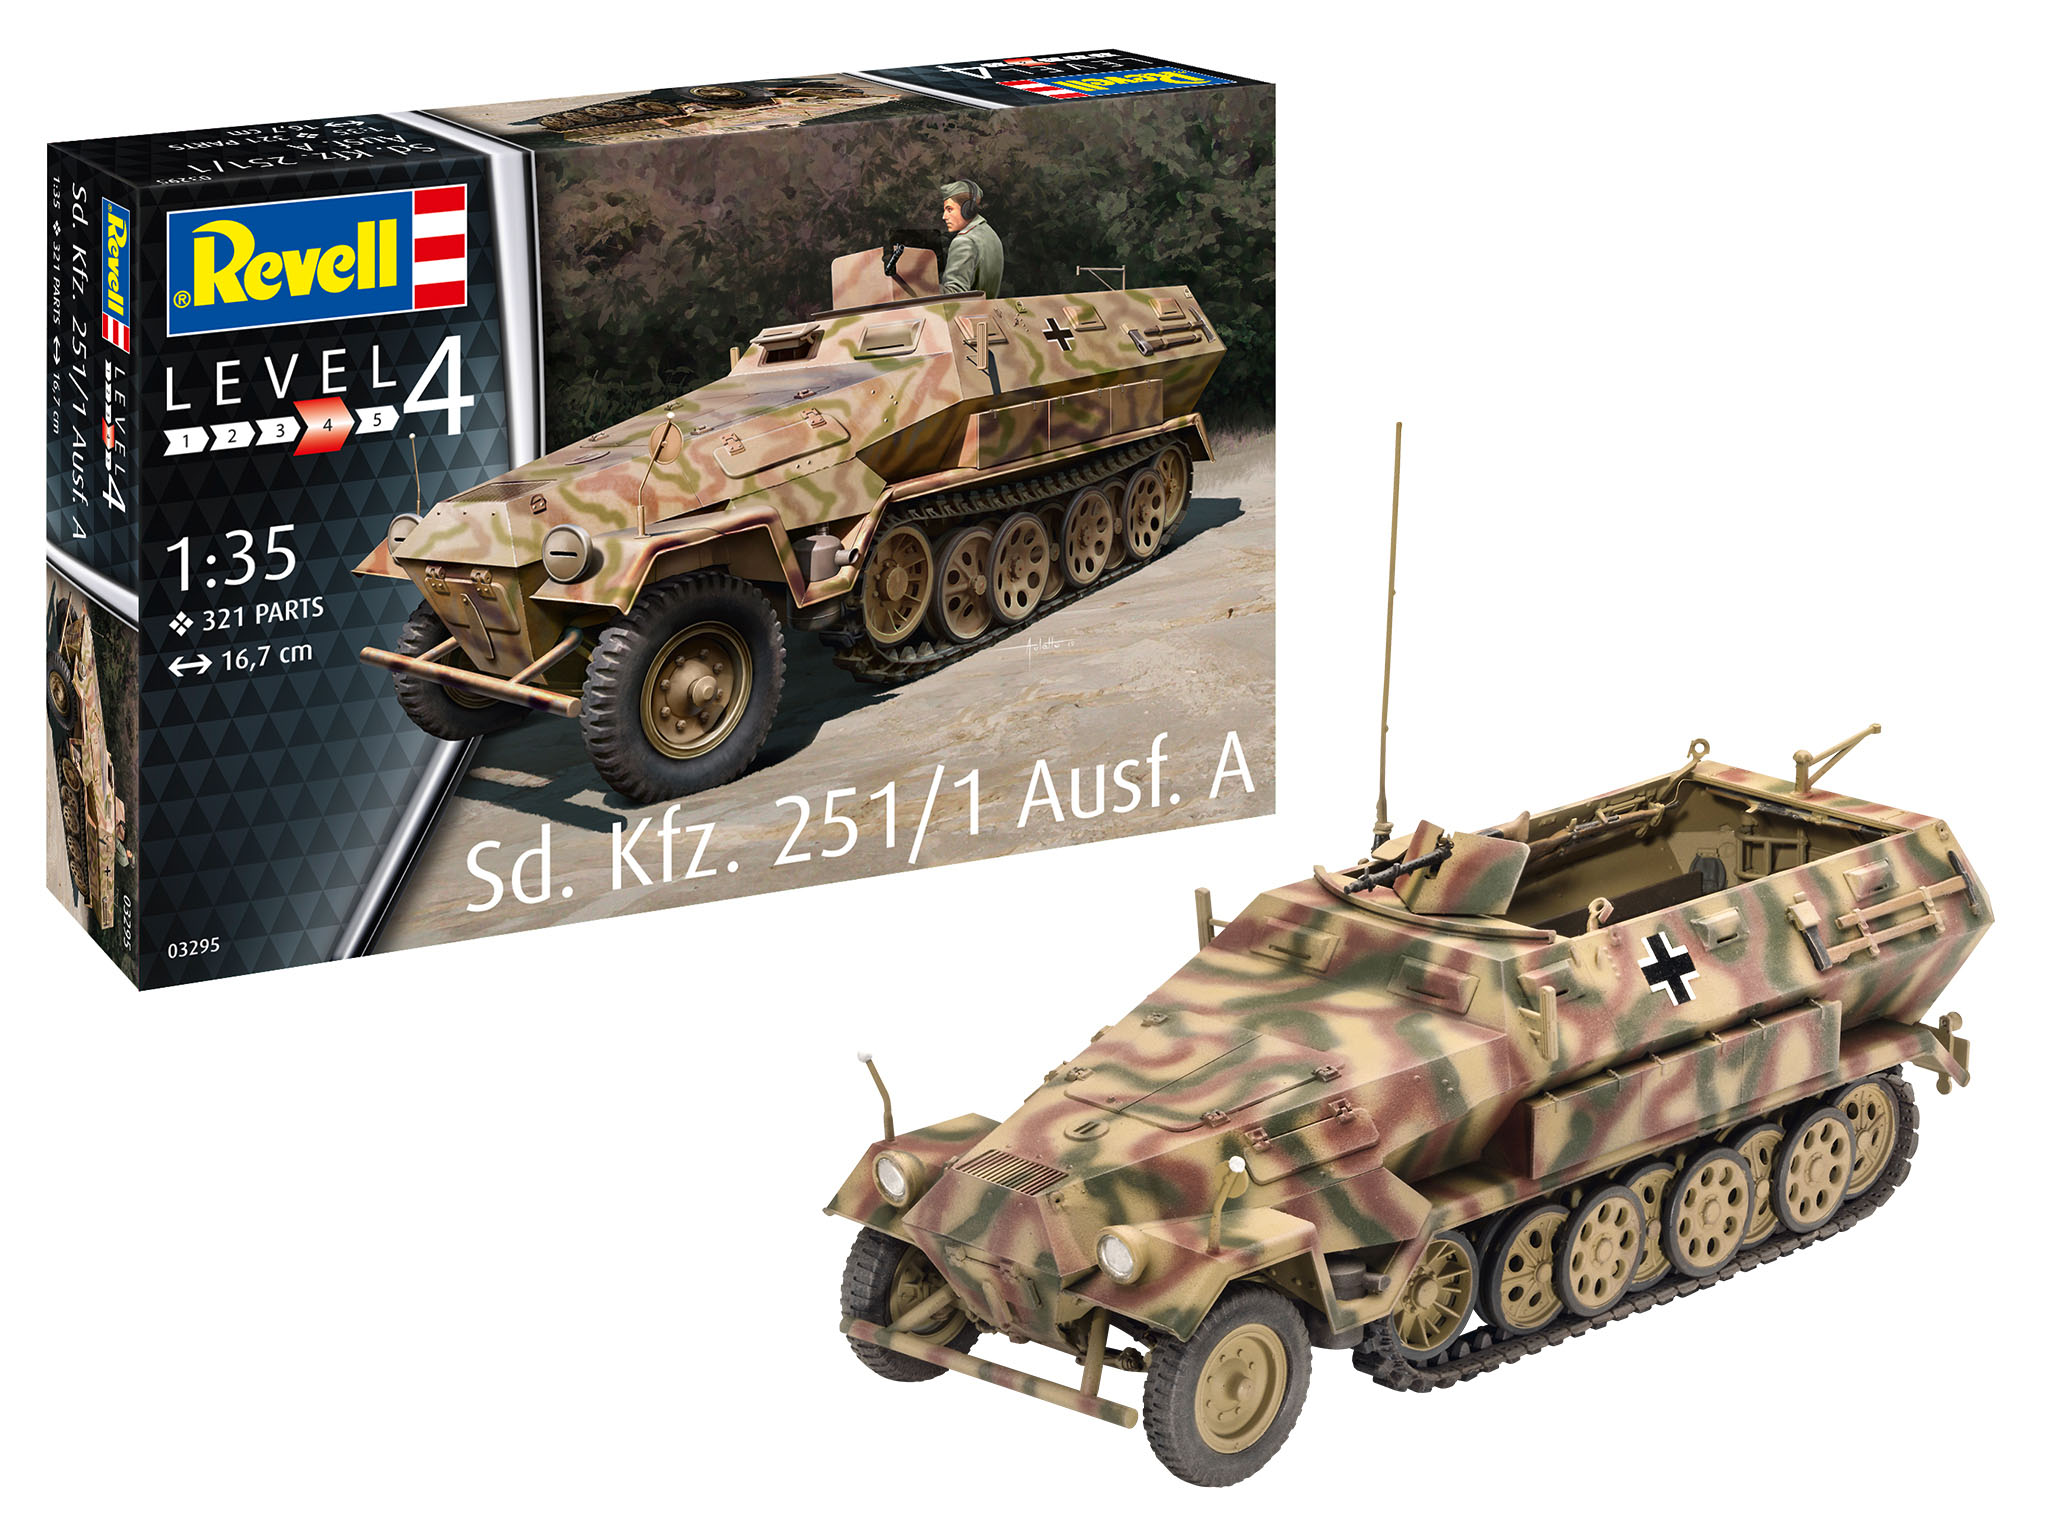 Revell Sd.Kfz. 251/1 Ausf.A in 1:35 bouwpakket